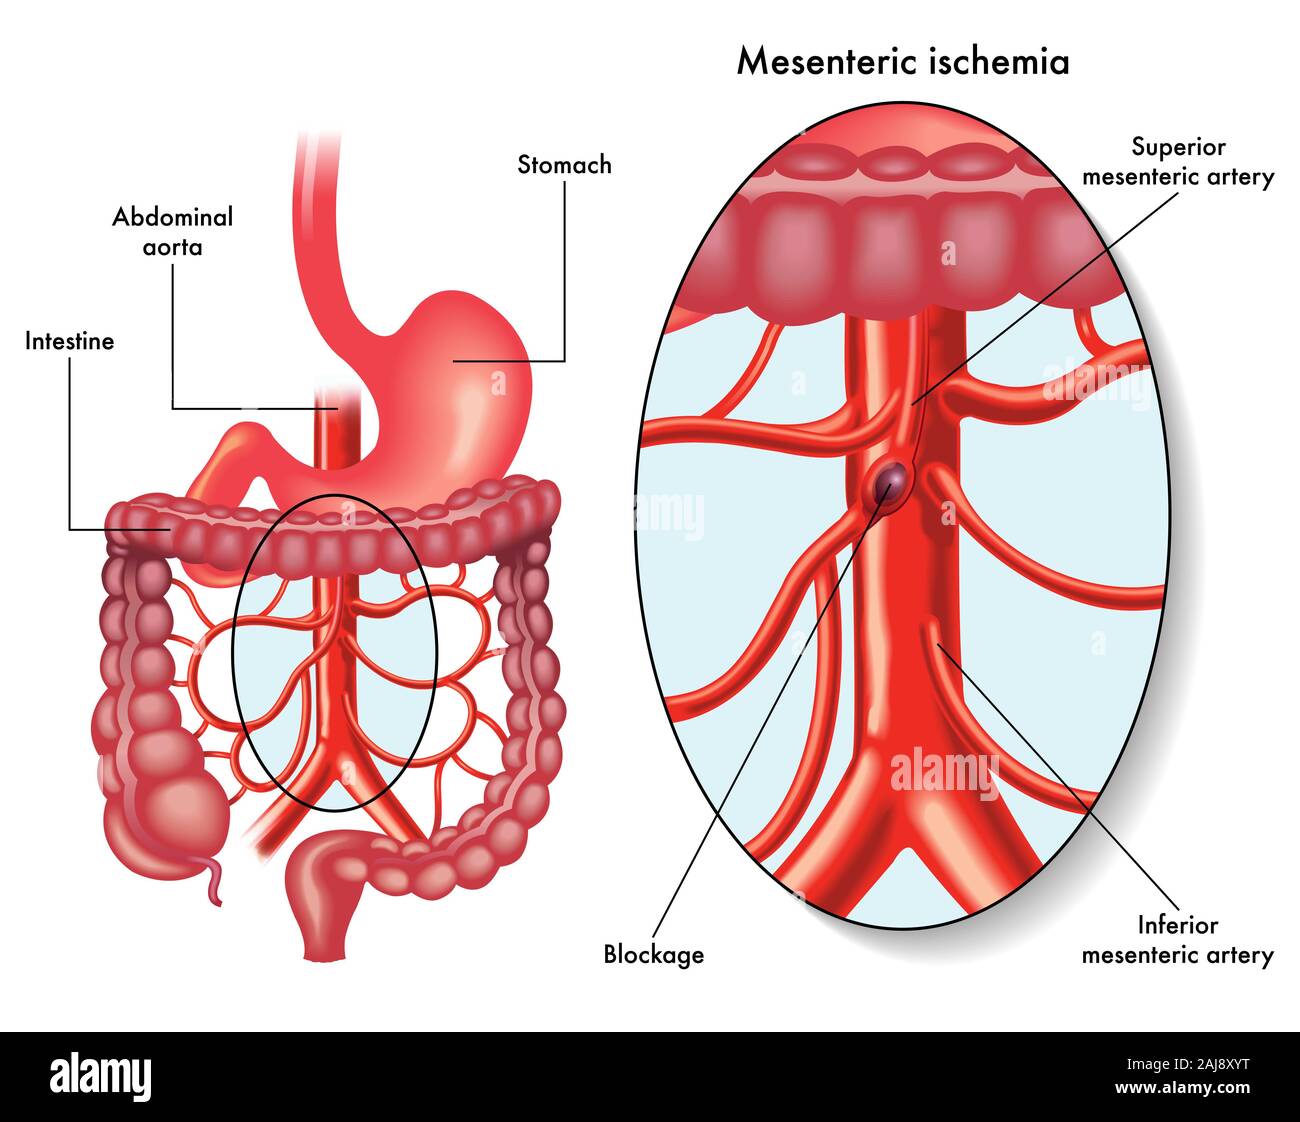 Ilustración mostrando una isquemia mesentérica también llamado infarto intestinal, una obstrucción de la circulación sanguínea, afectando la arteria mesentérica Foto de stock